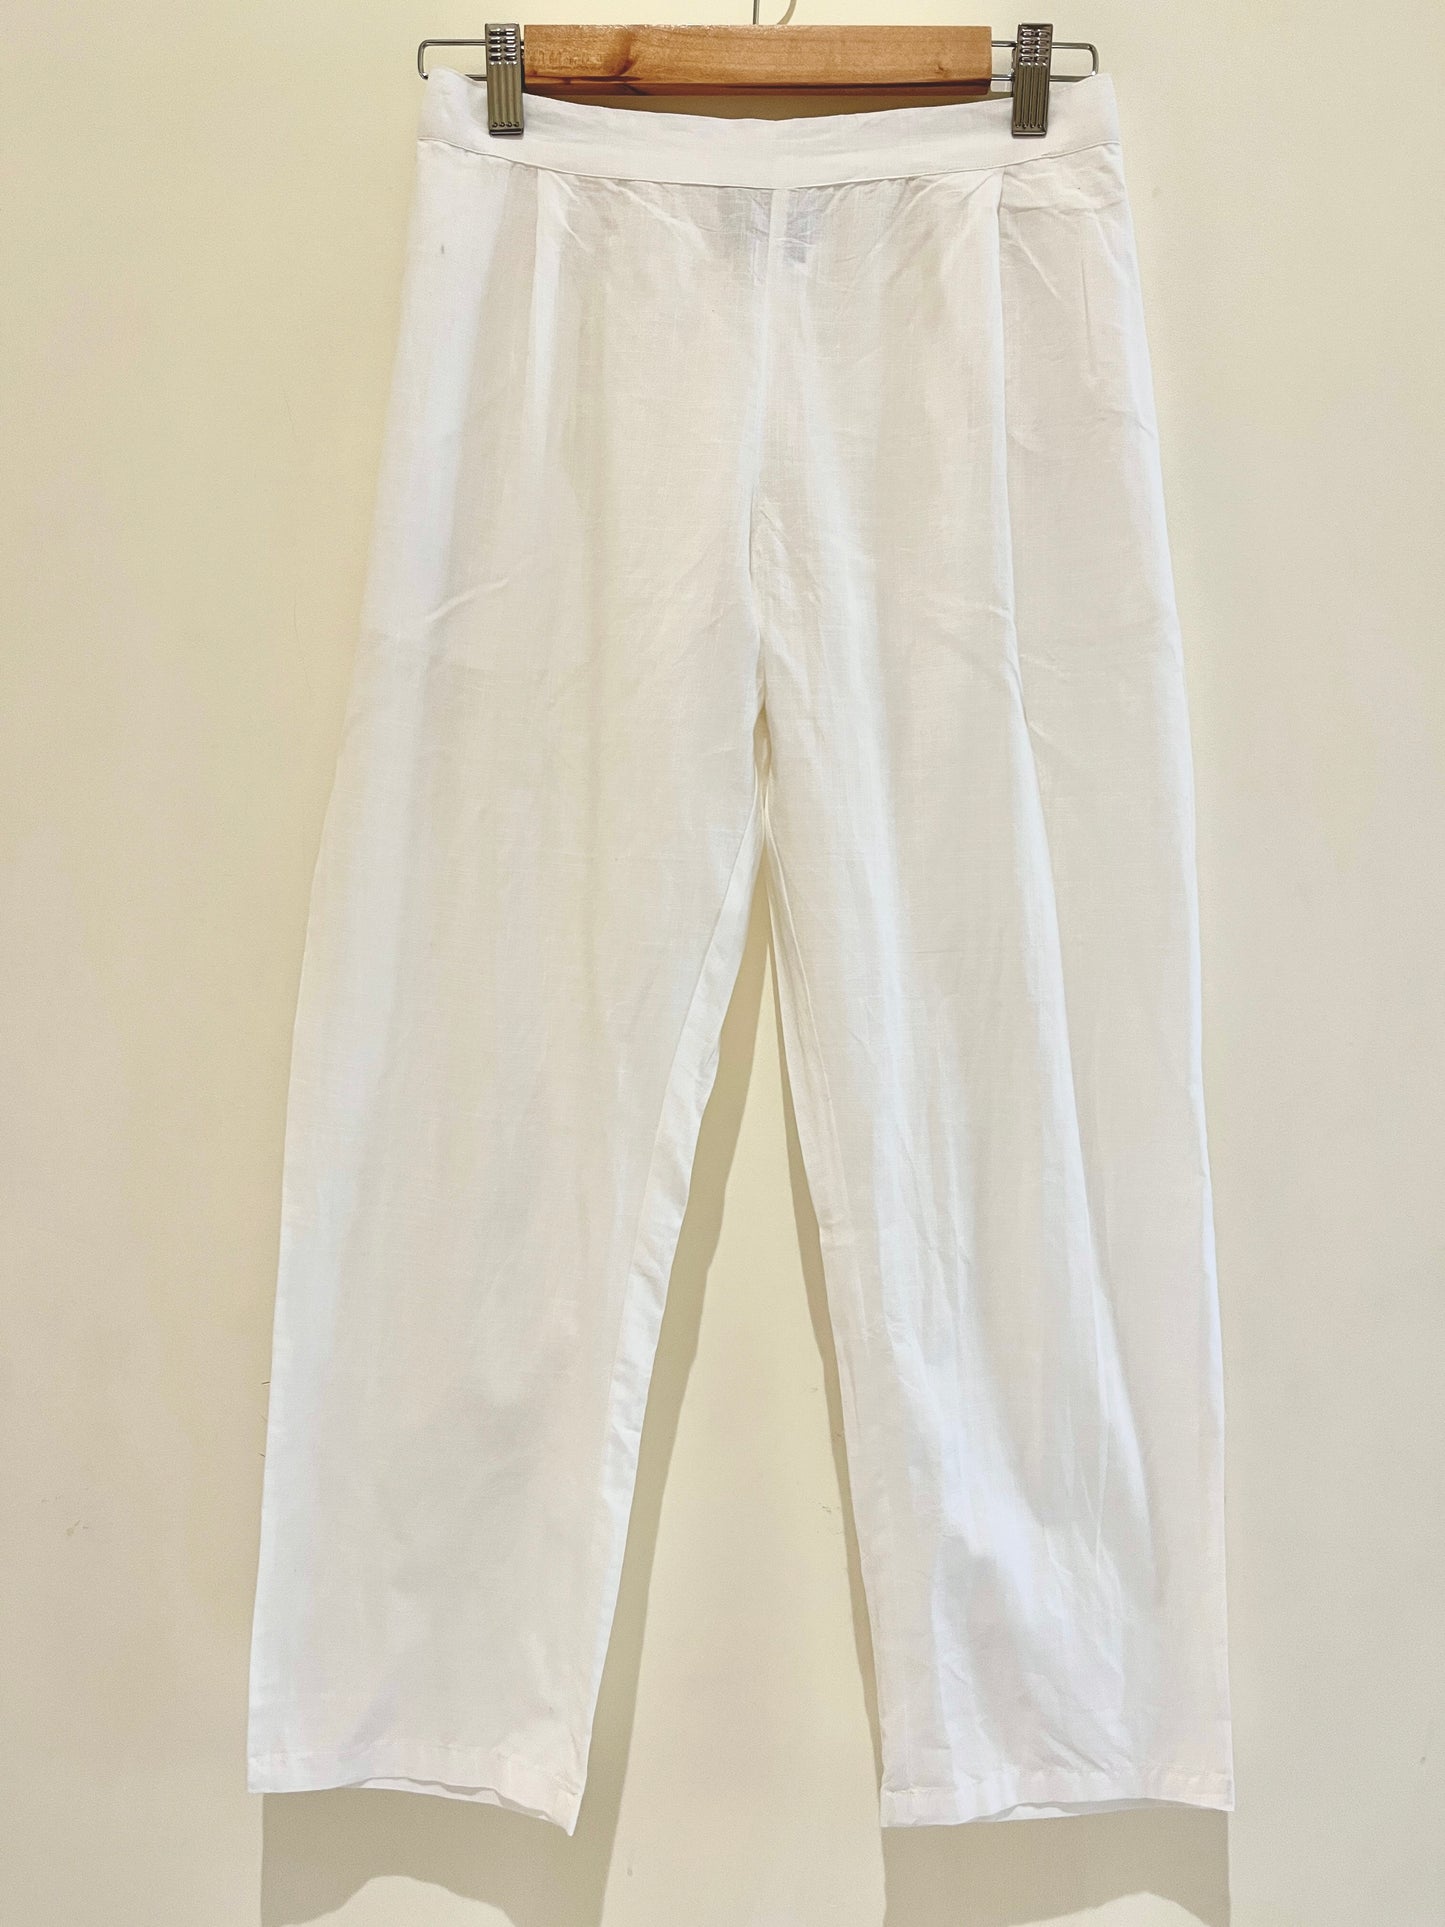 White Narrow Leg Cotton Pants